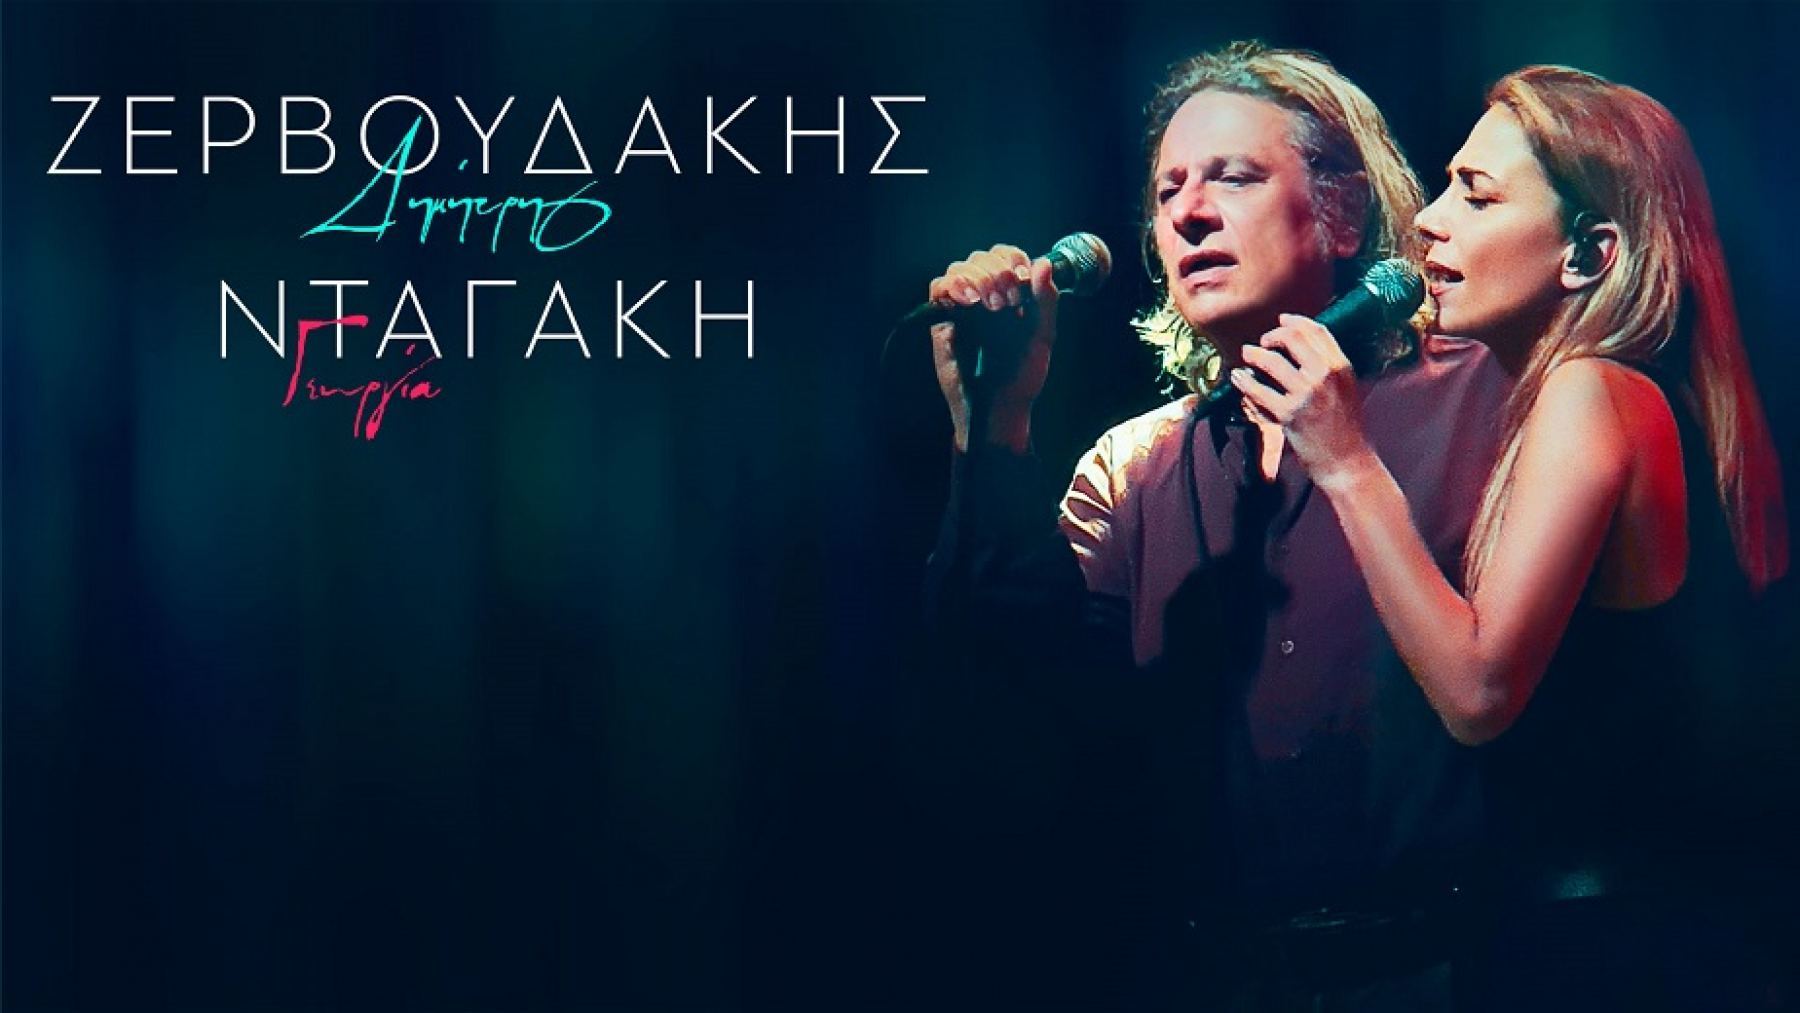 Αναβάλλεται η αποψινή συναυλία των Δημήτρη Ζερβουδάκη και Γεωργίας Νταγάκη στη «Χώρα»